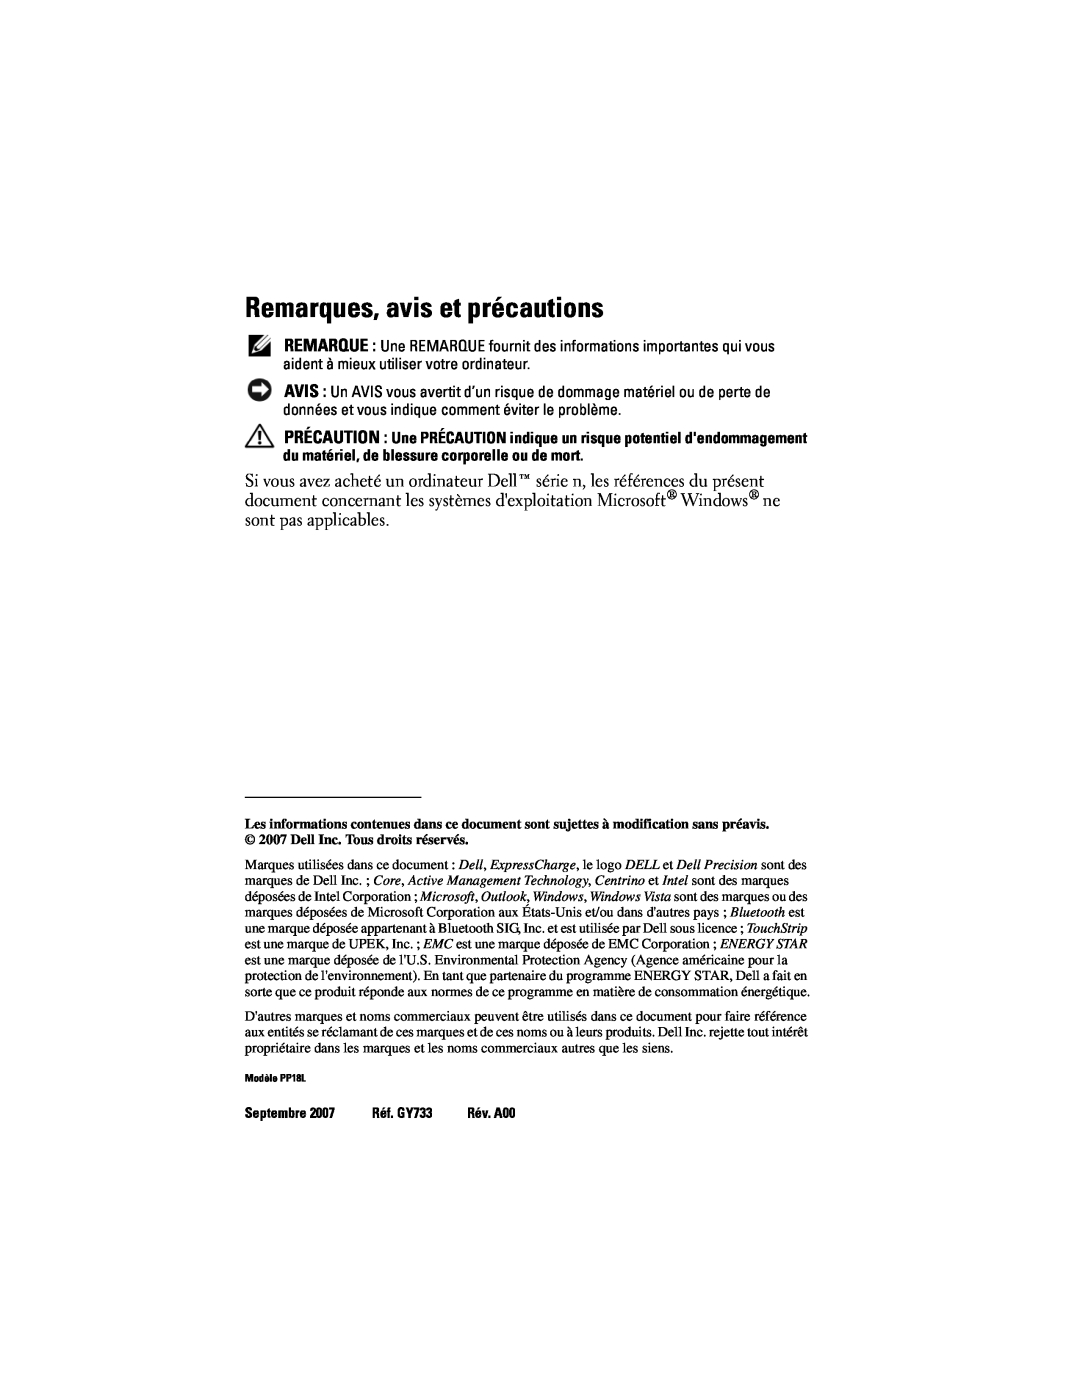 Dell PP18L manual Remarques, avis et précautions, Septembre, Réf. GY733 